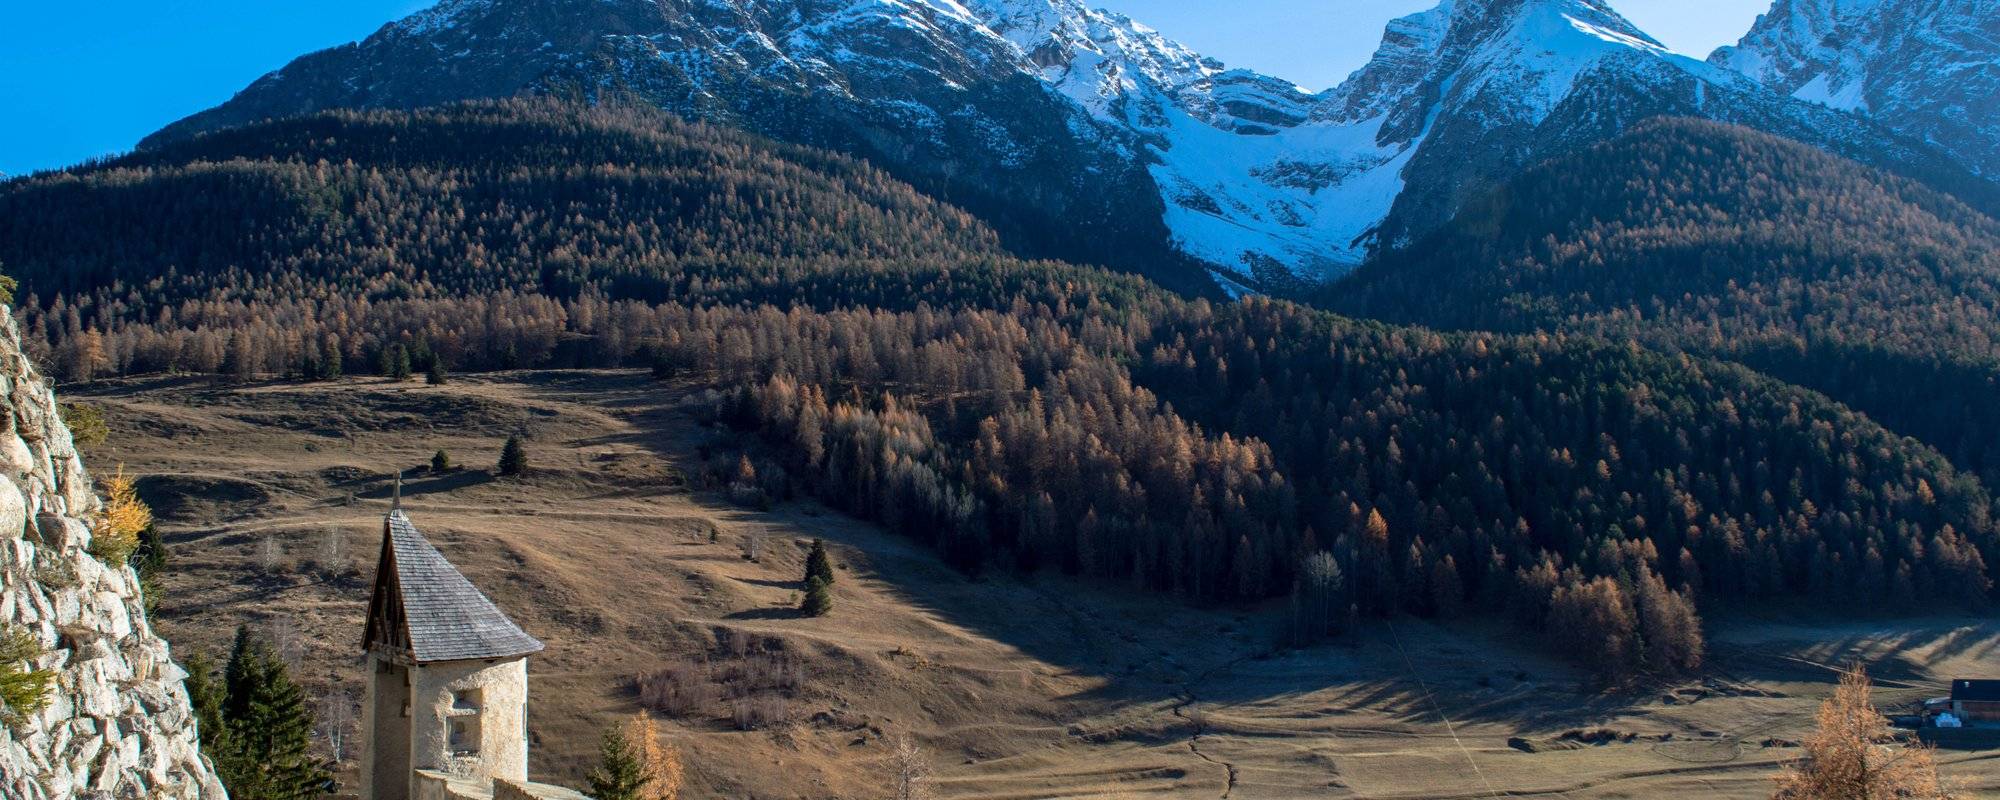 Tarasp - a hidden gem in the Swiss Alps